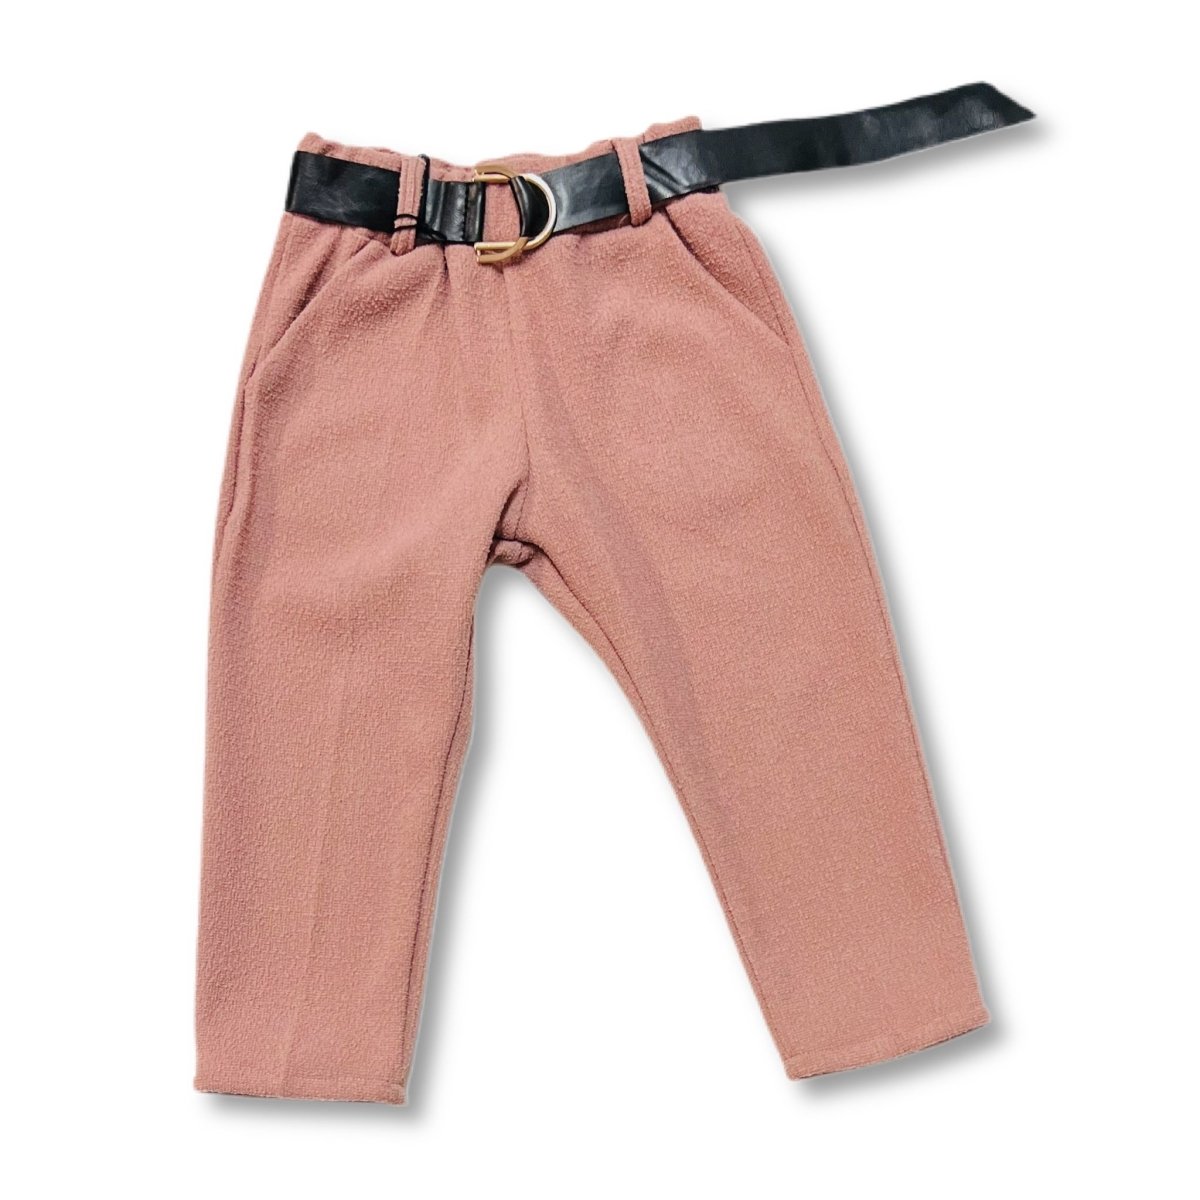 Pantalone Bimba - Mstore016 - Pantalone Bimba - Granada